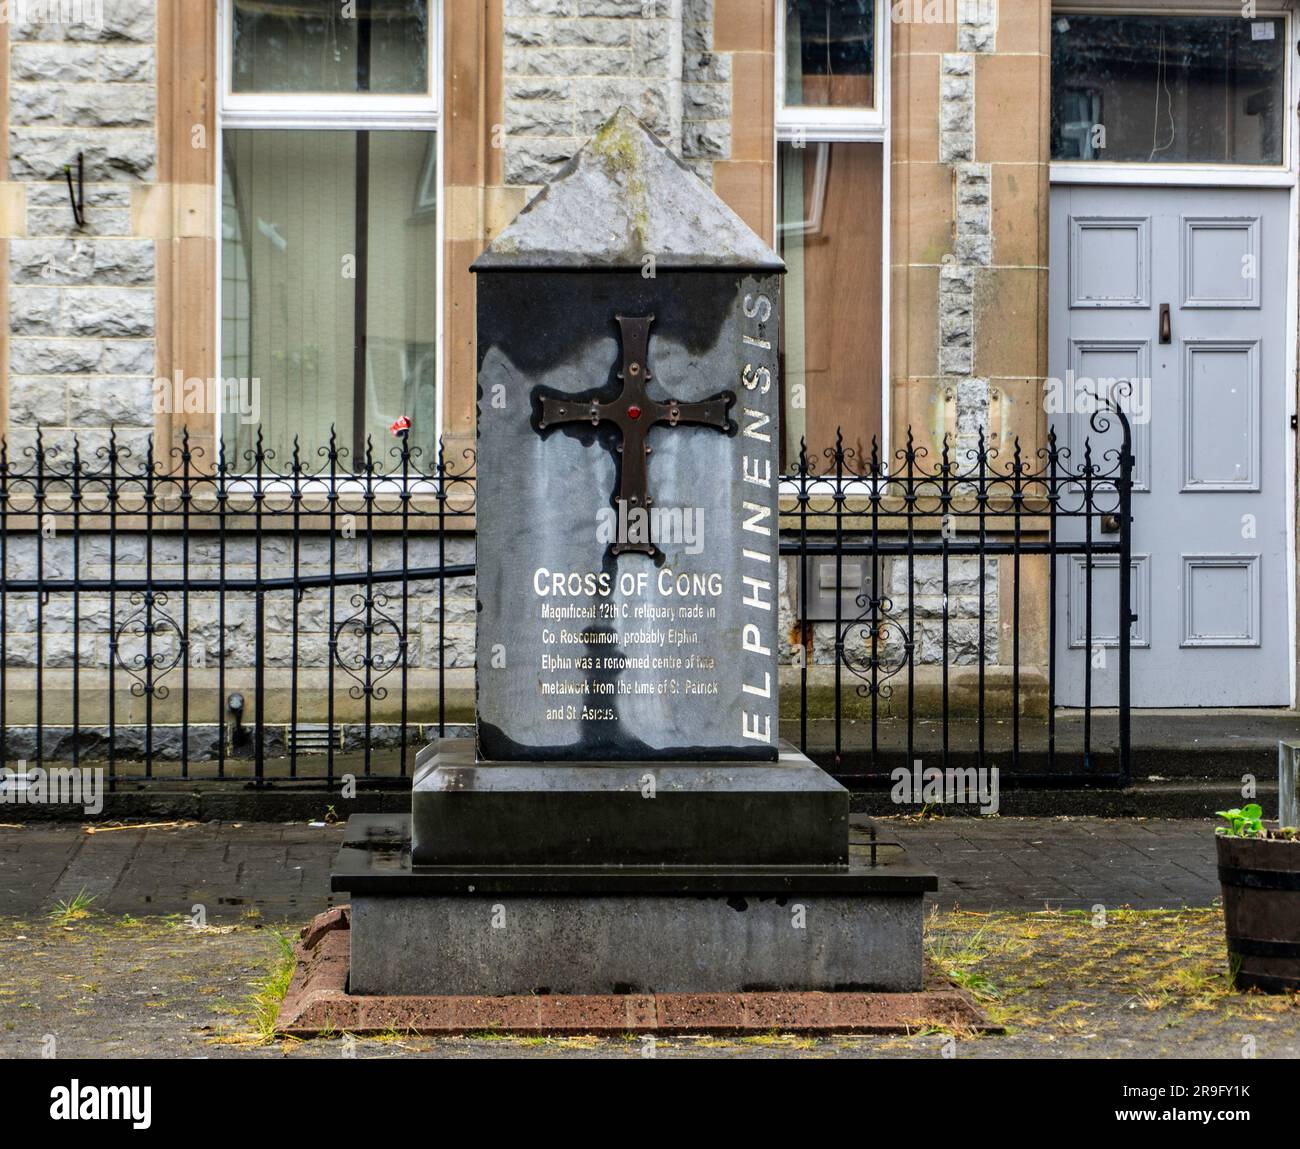 Una replica della Croce di Cong nella città di Elphin, Roscommon, Irlanda. La croce originale è conservata nel National Museum of Ireland. Foto Stock